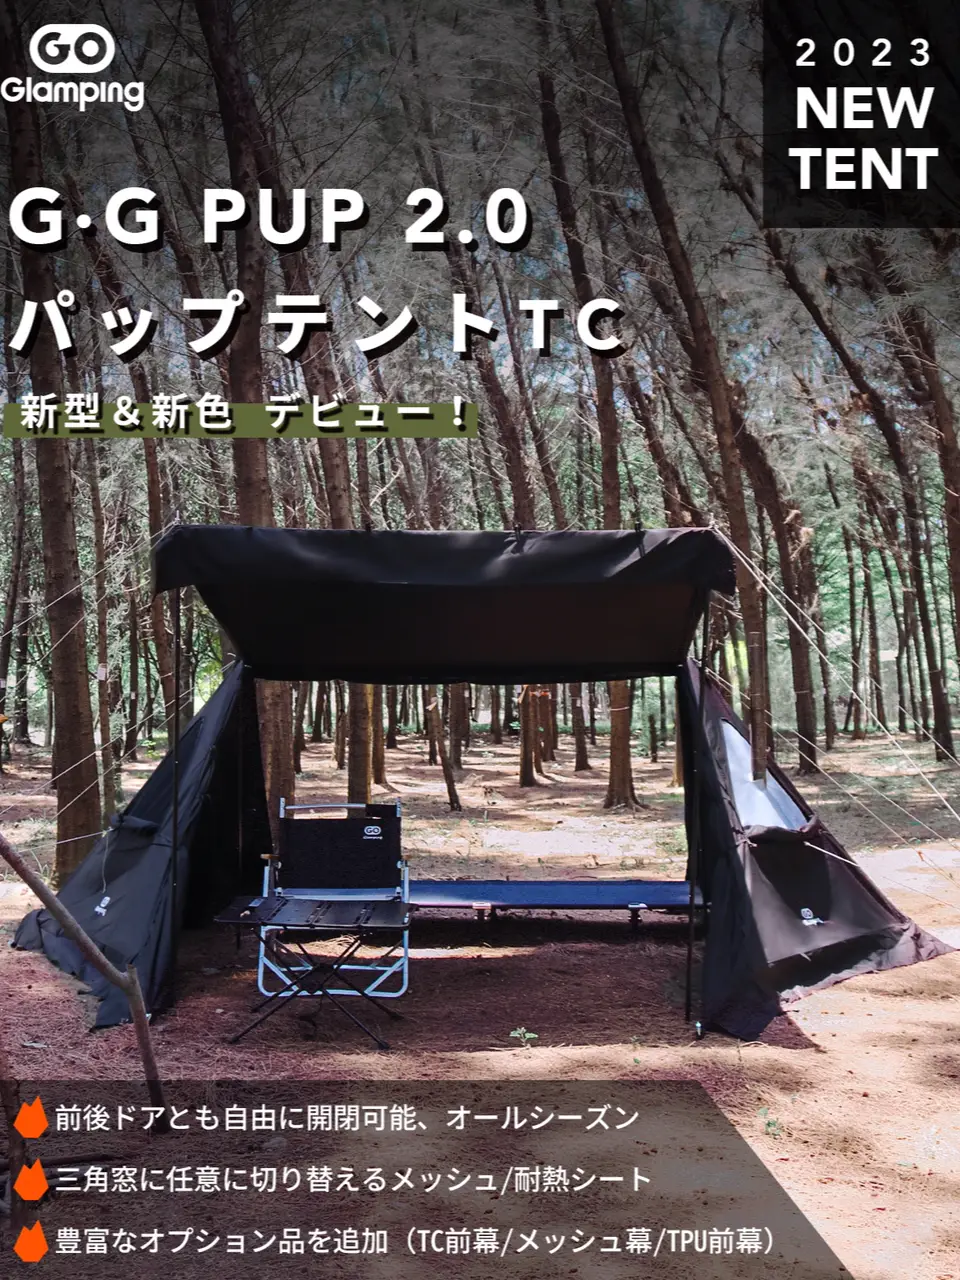 🎉GOGlamping G・G PUP 2.0 パップテントTCが新登場!🎉